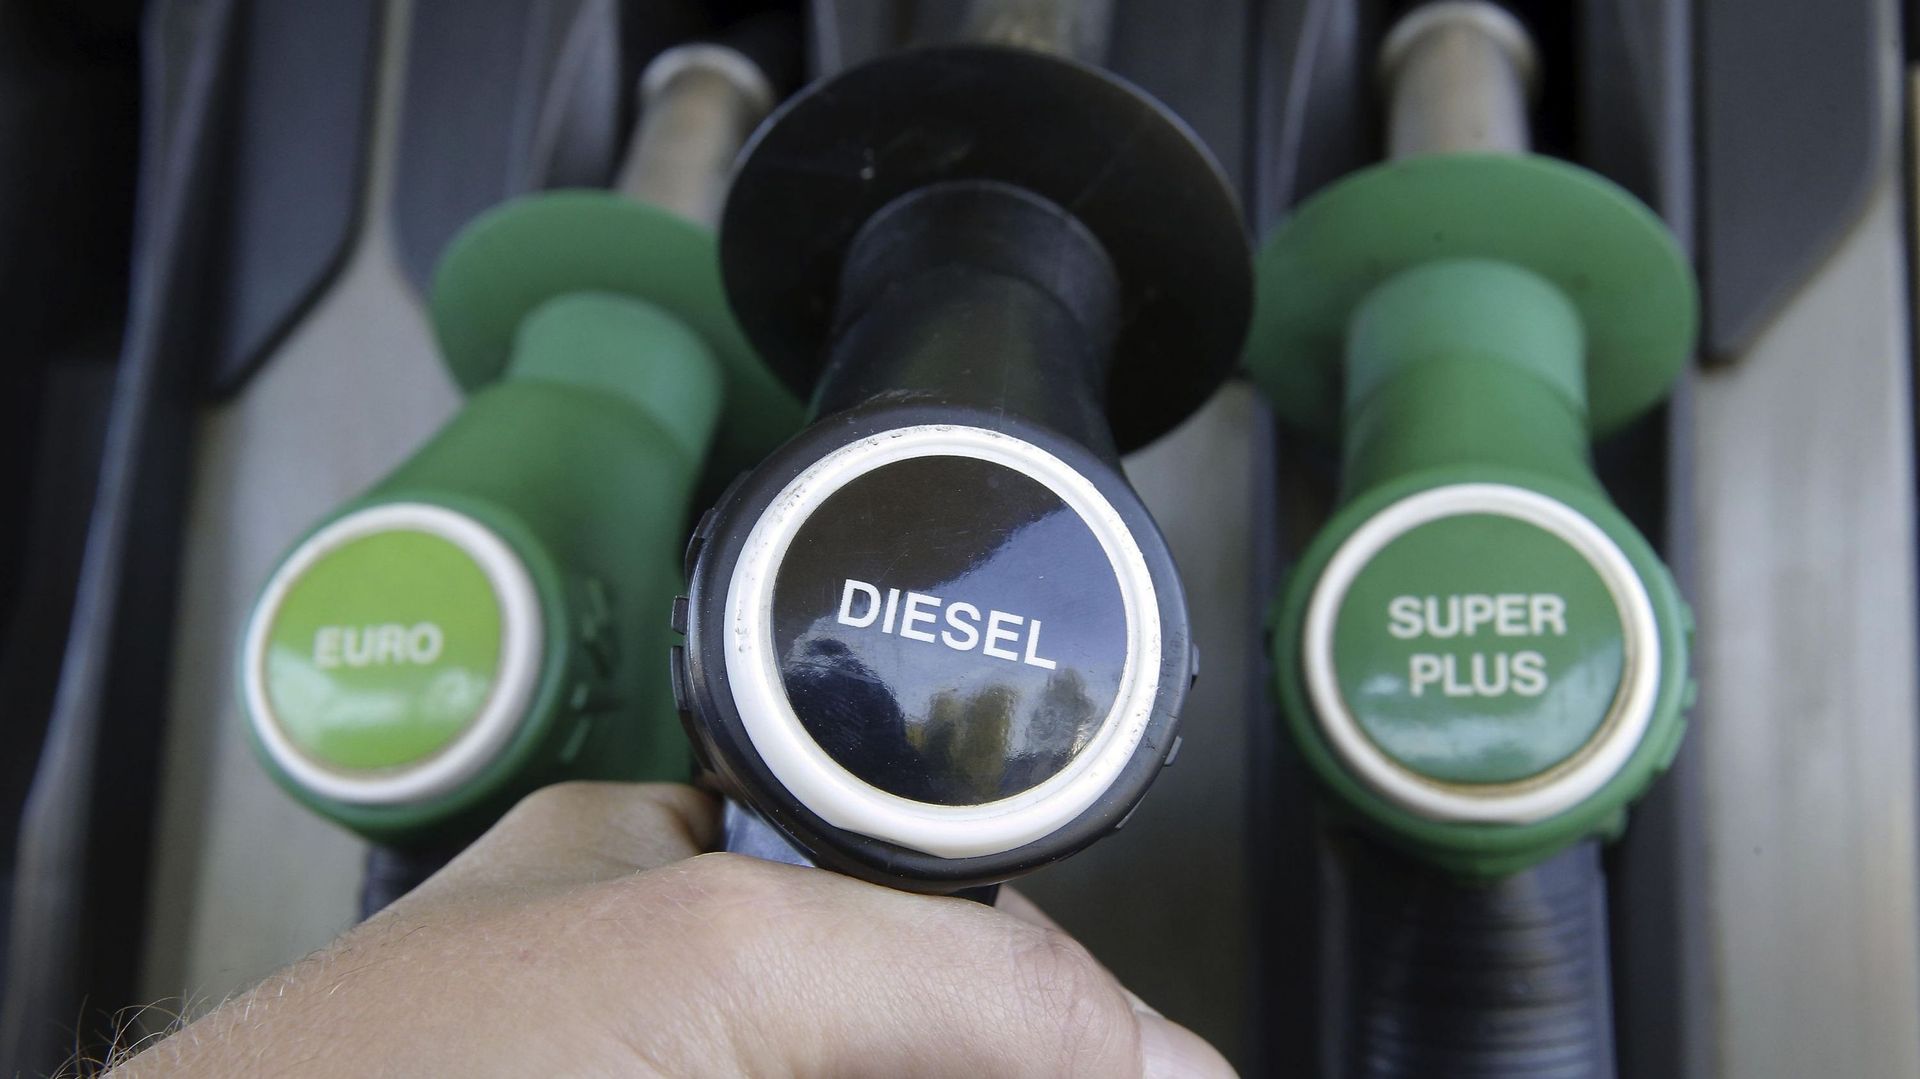 Les prix du diesel avaient atteint des niveaux records ces dernières semaines. Image d'illustration.